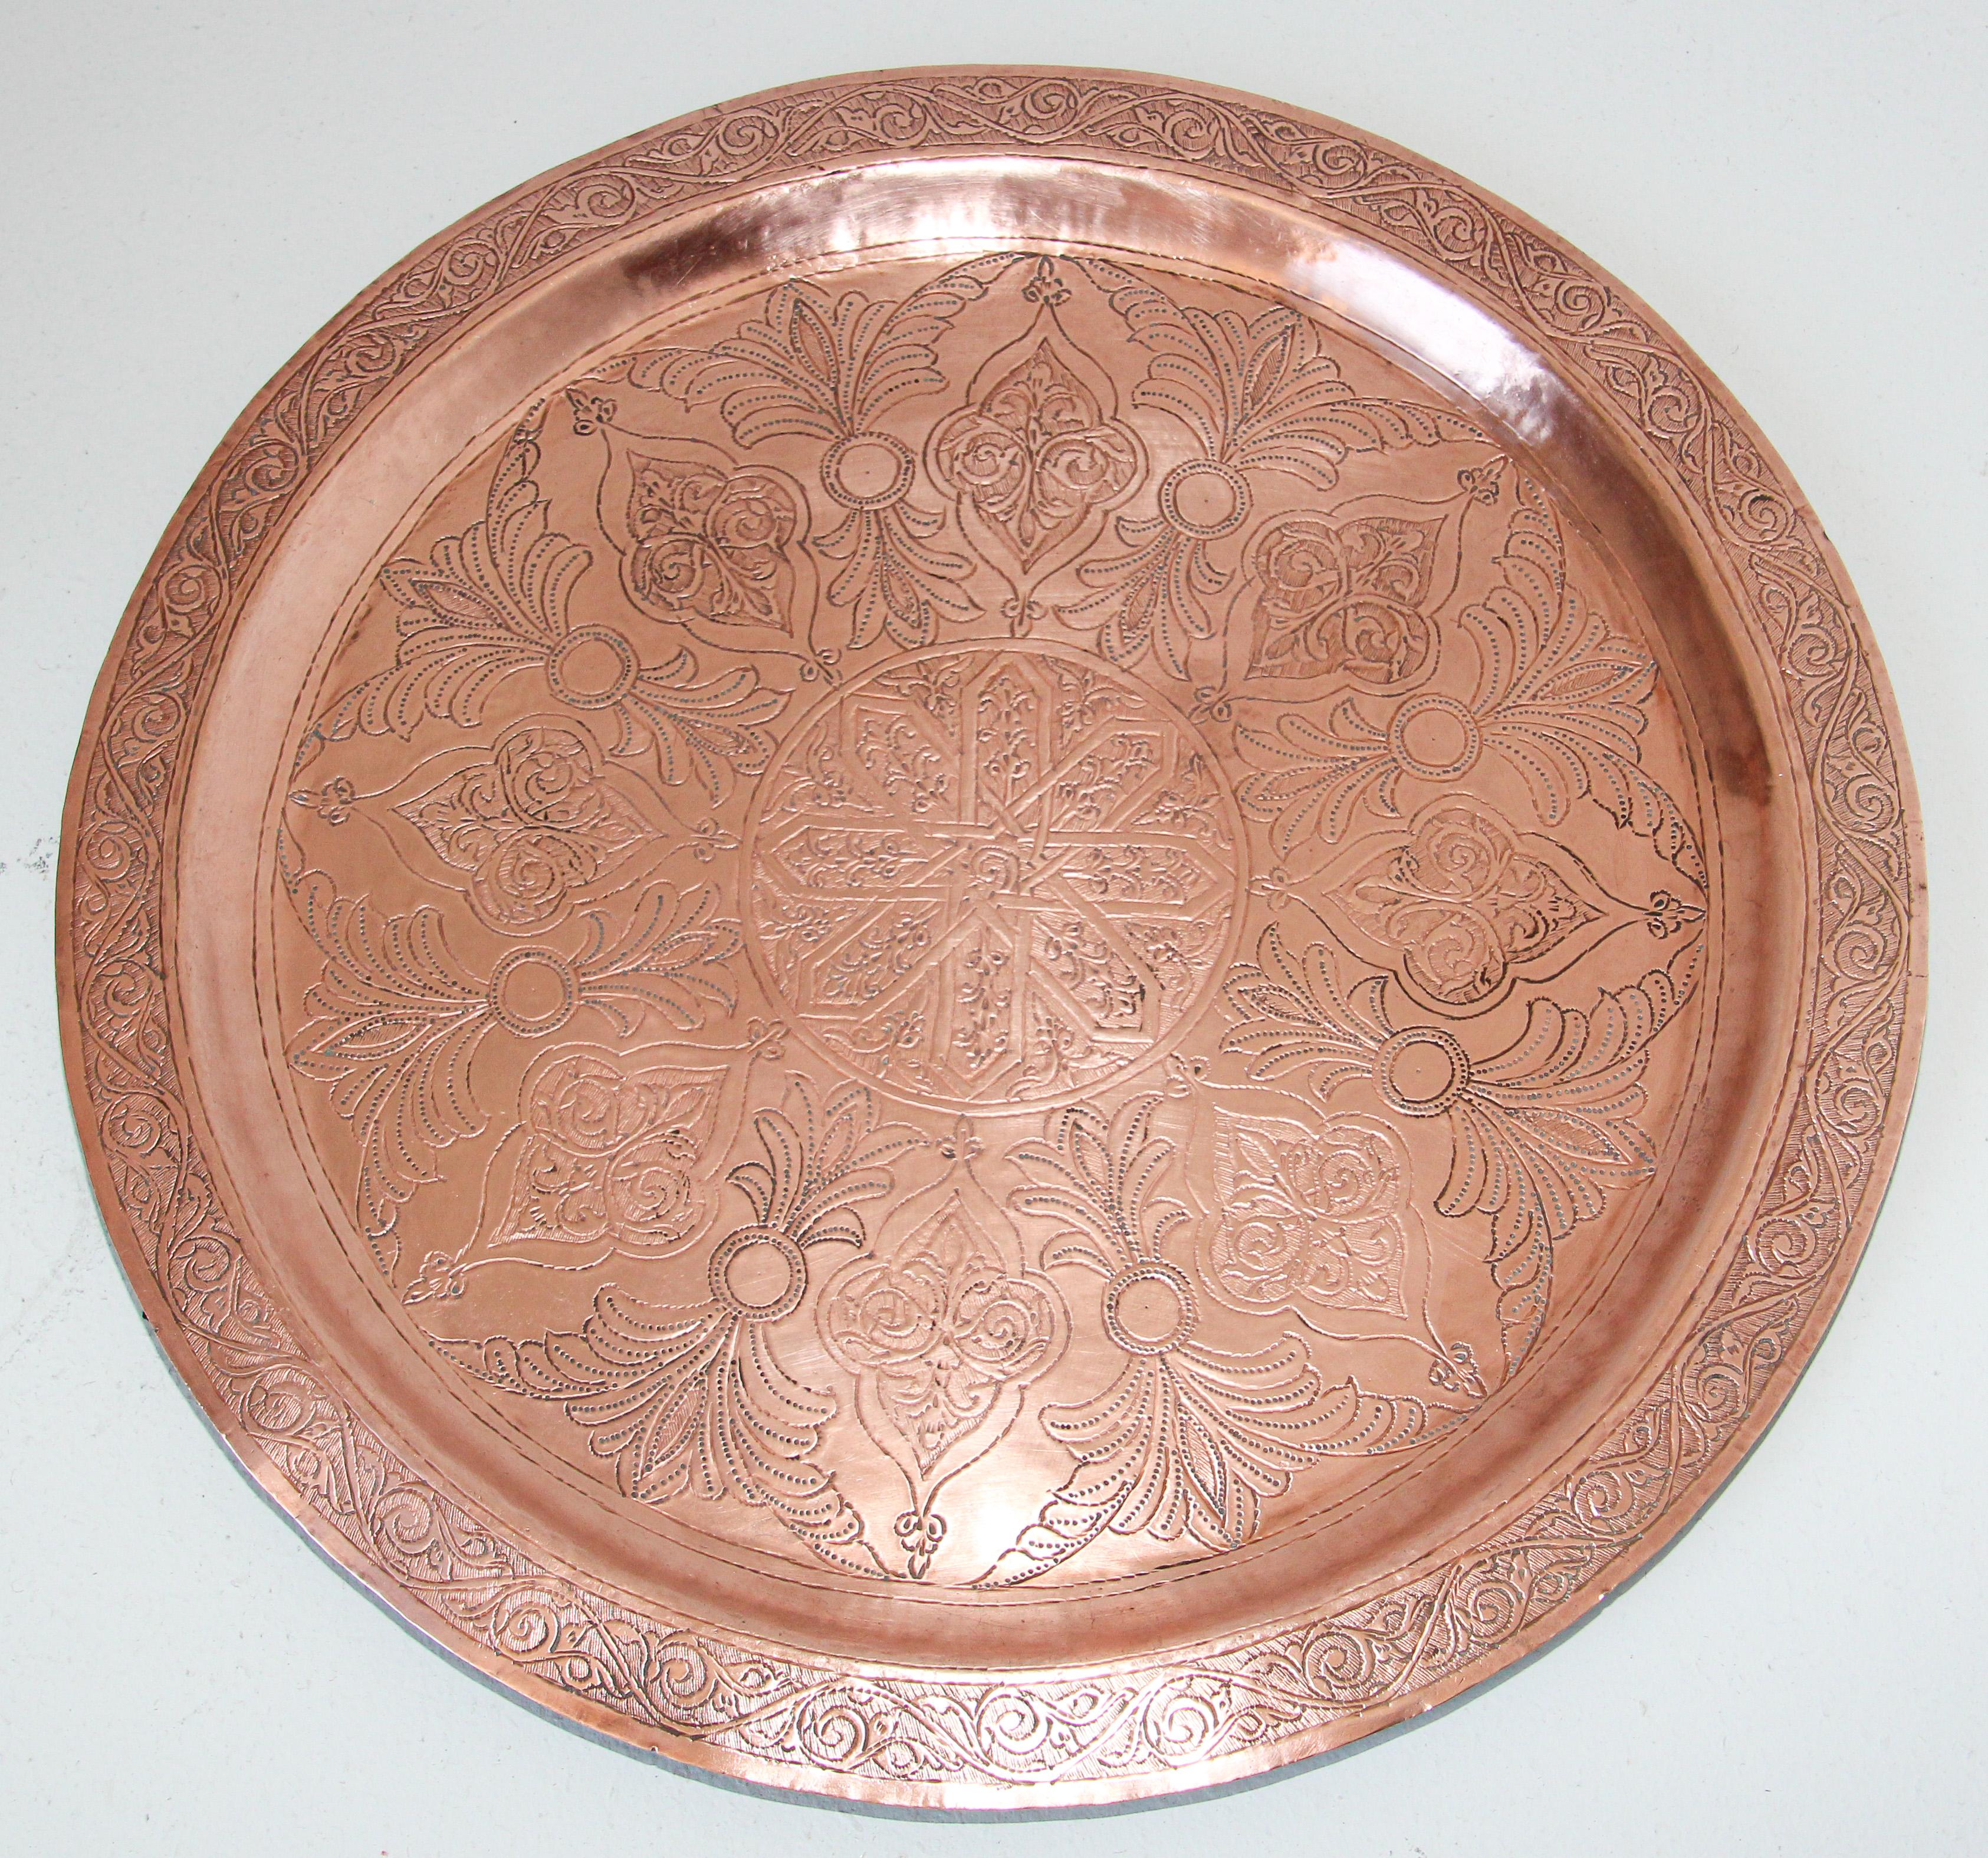 Antikes rundes Kupfertablett im marokkanisch-maurischen Stil.
Die handgefertigte runde Kupferplatte aus Metall ist mit islamischen maurischen Blumen- und geometrischen Mustern verziert und gehämmert.
Schwere Kupferplatte aus rotem Metall mit sehr